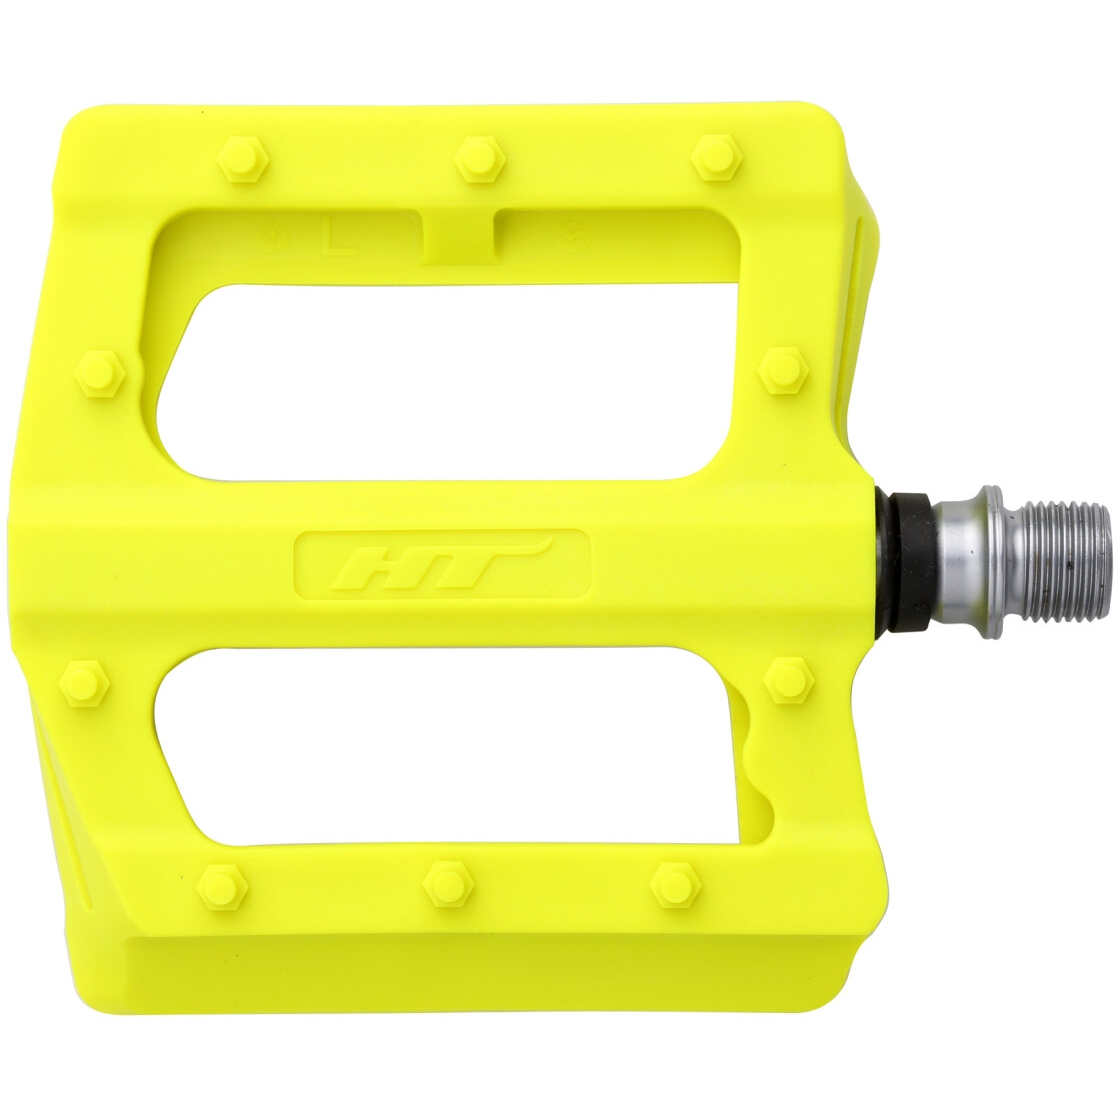 Productfoto van HT PA12 NANO P Platformpedalen - neon yellow